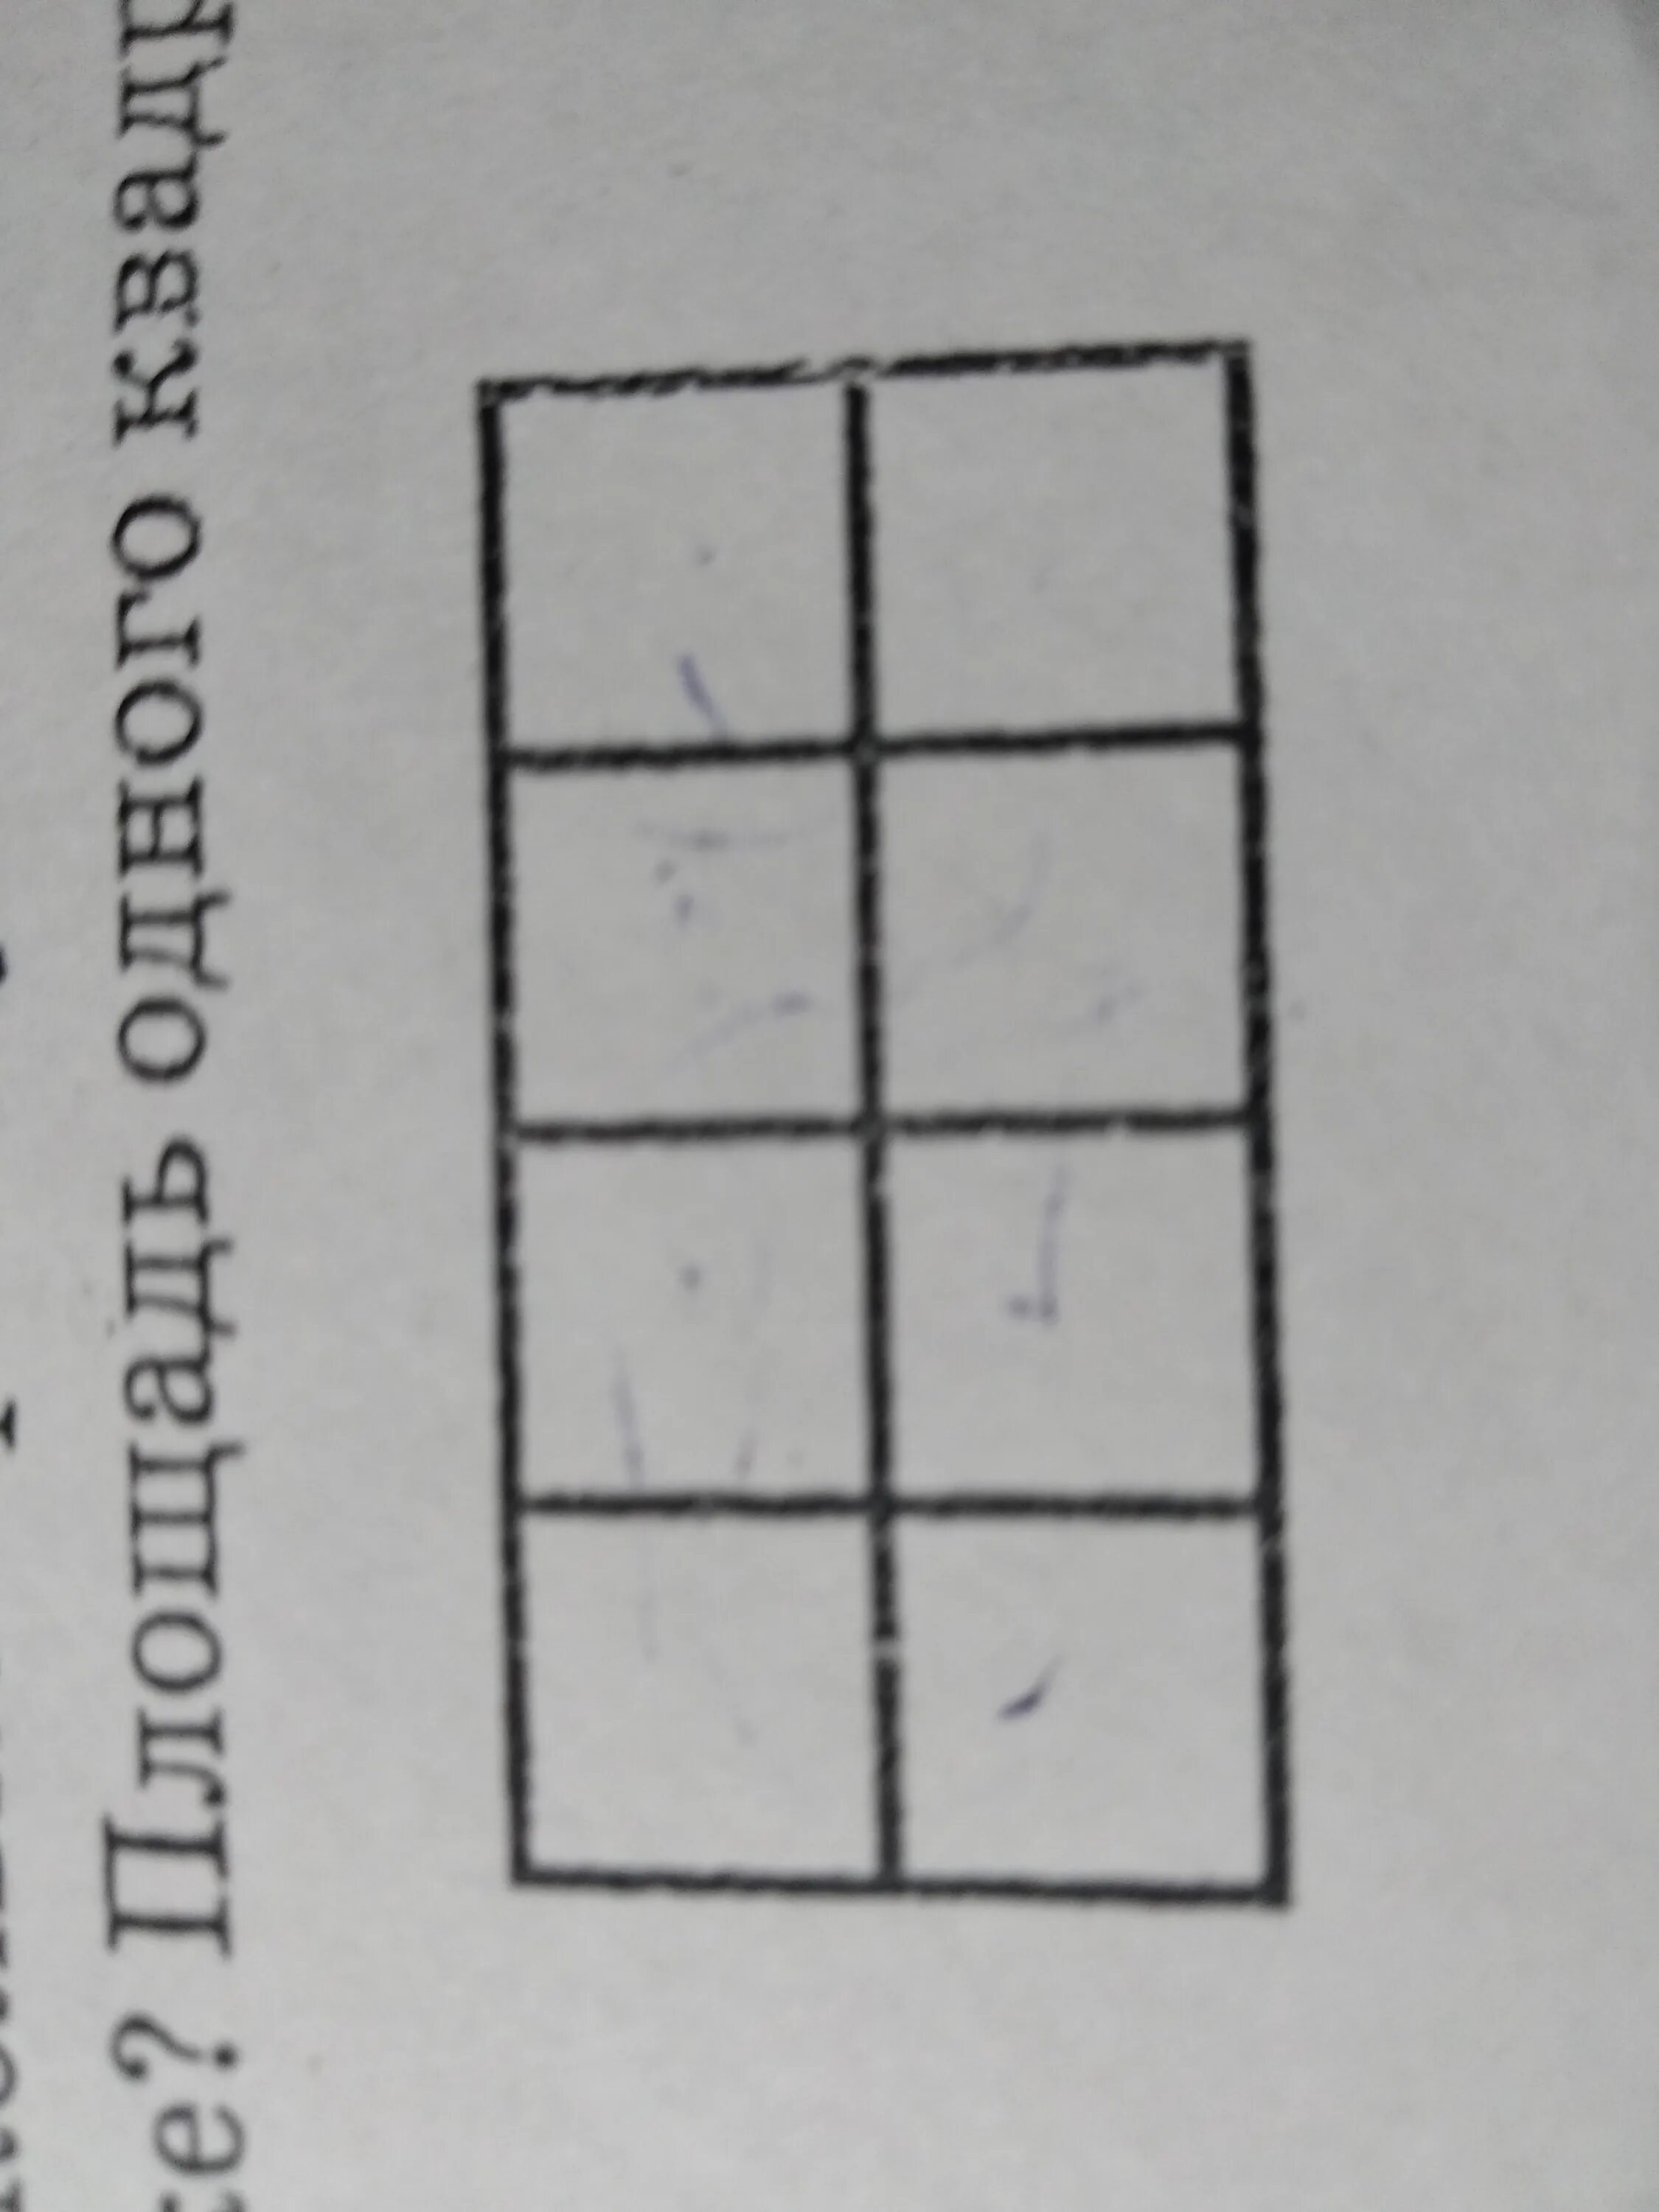 Сколько прямоугольников изображено. Сколько квадратов изображено на рисунке. Сколько квадратов и прямоугольников на картинке. Сколько прямоугольников на рисунке.